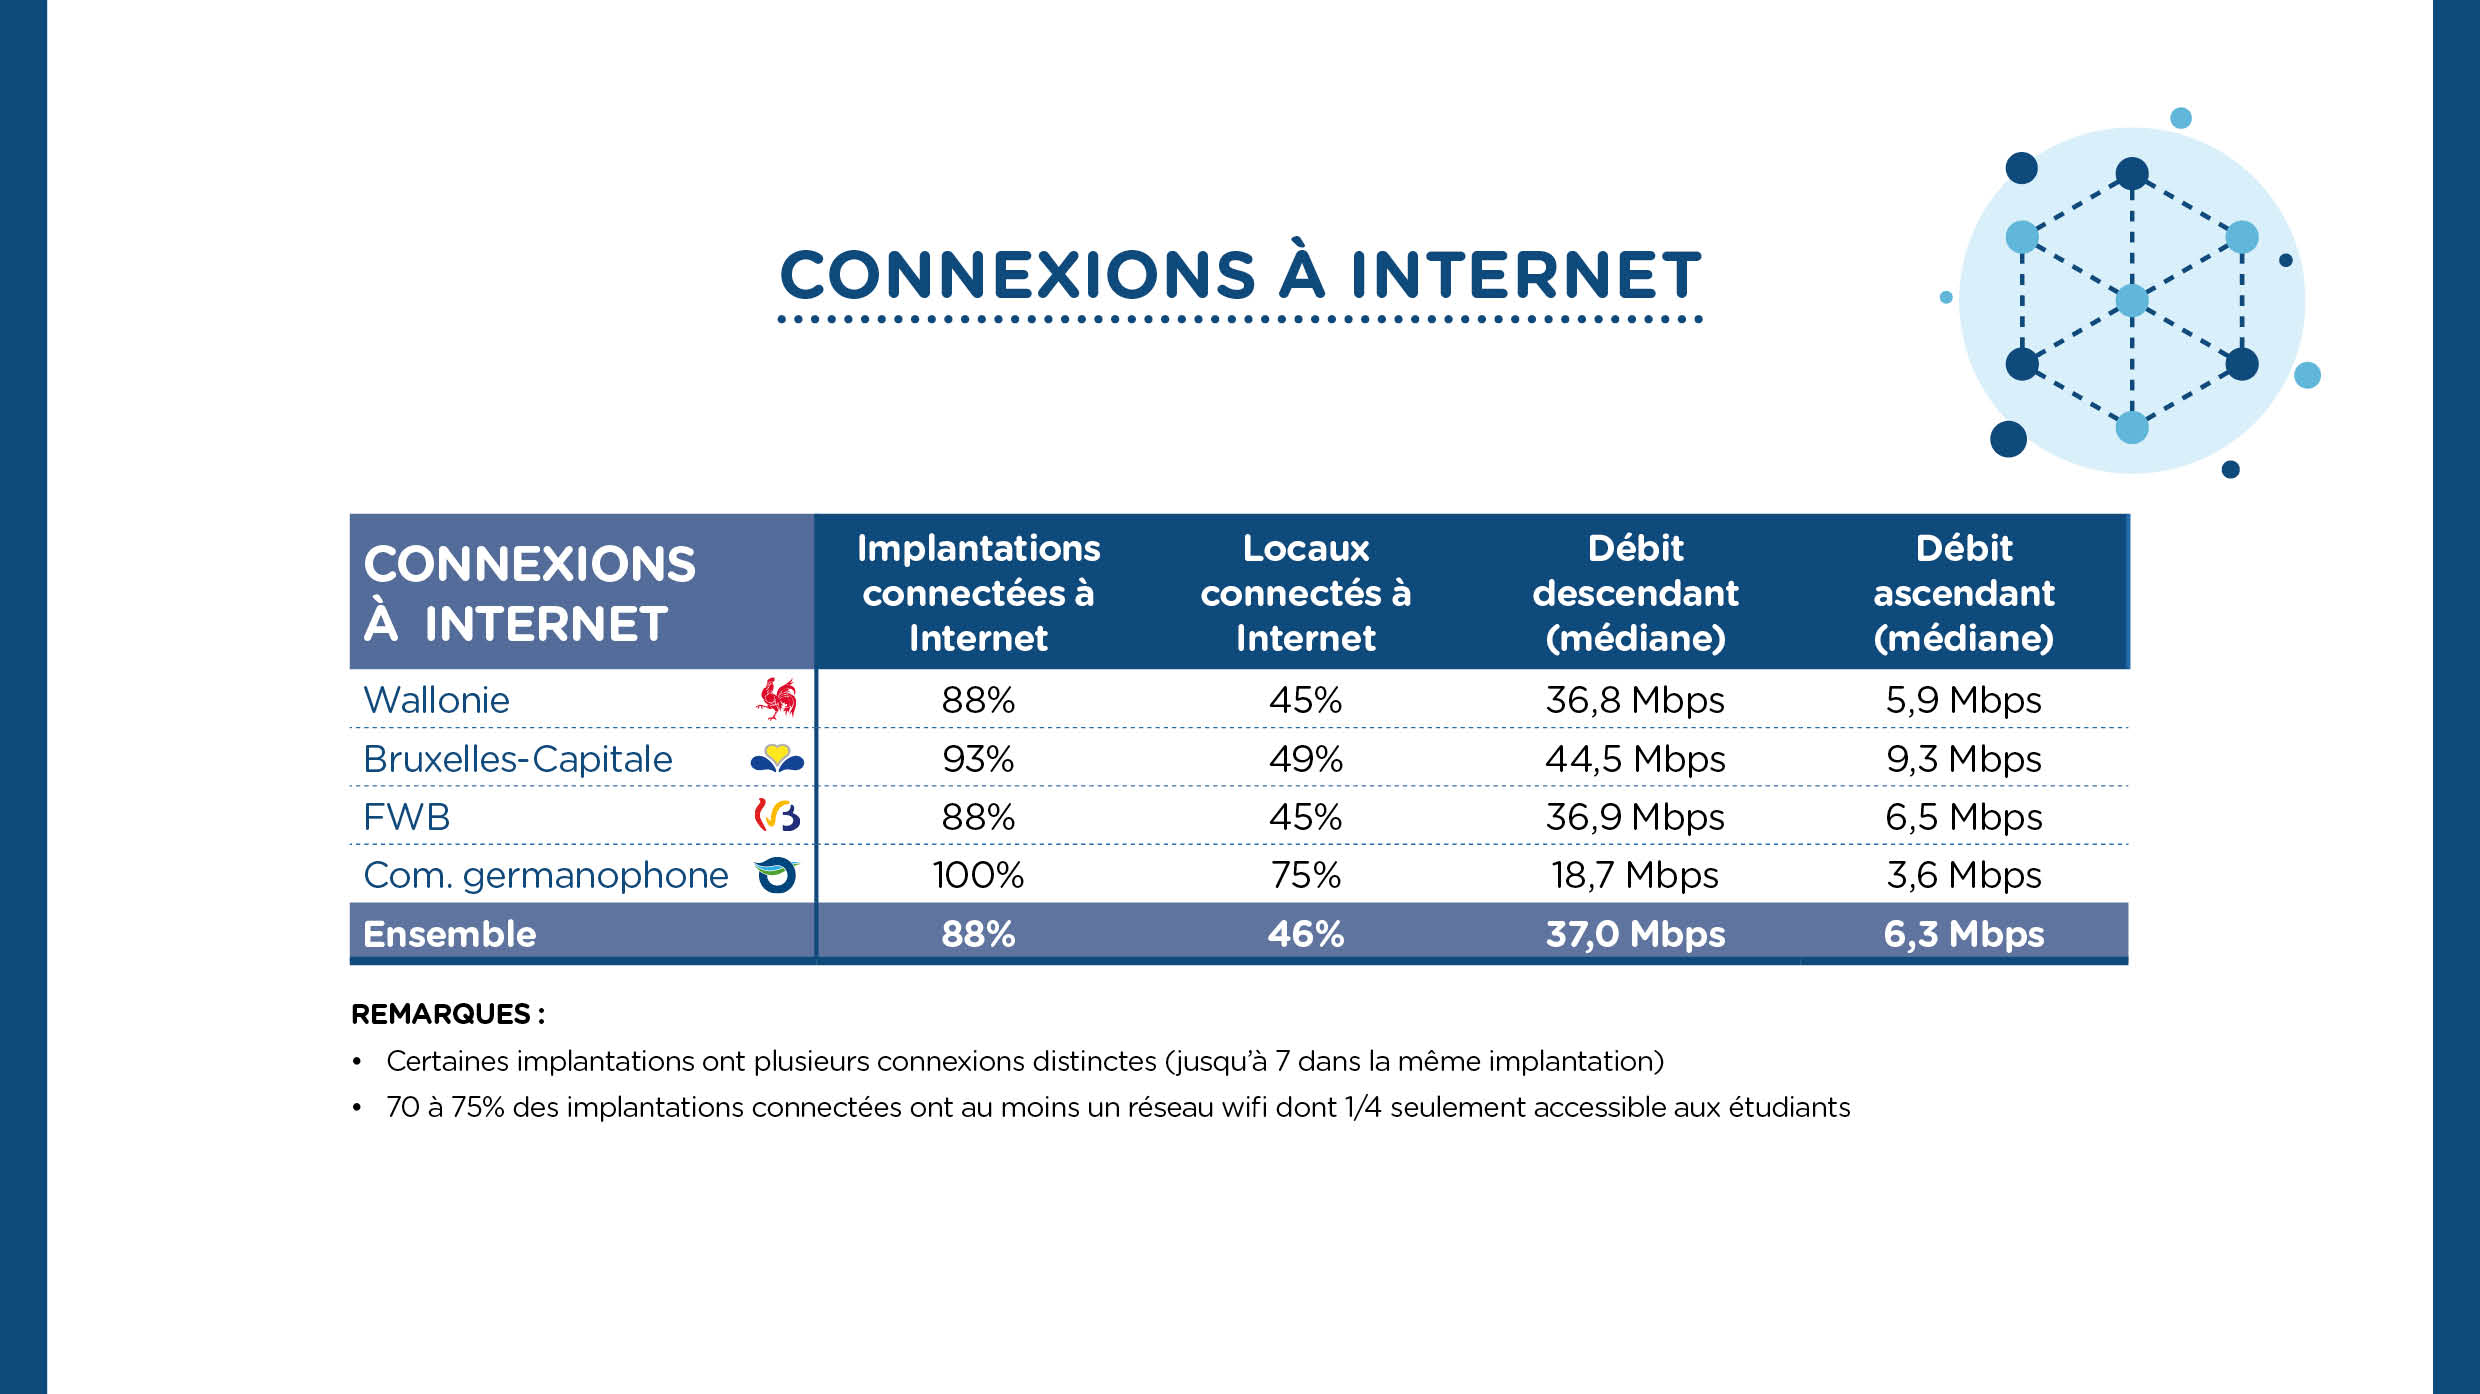 Barom%C3%A8tre-Digital-Wallonia-2018-Education-Num%C3%A9rique-Connexions-Internet.jpg